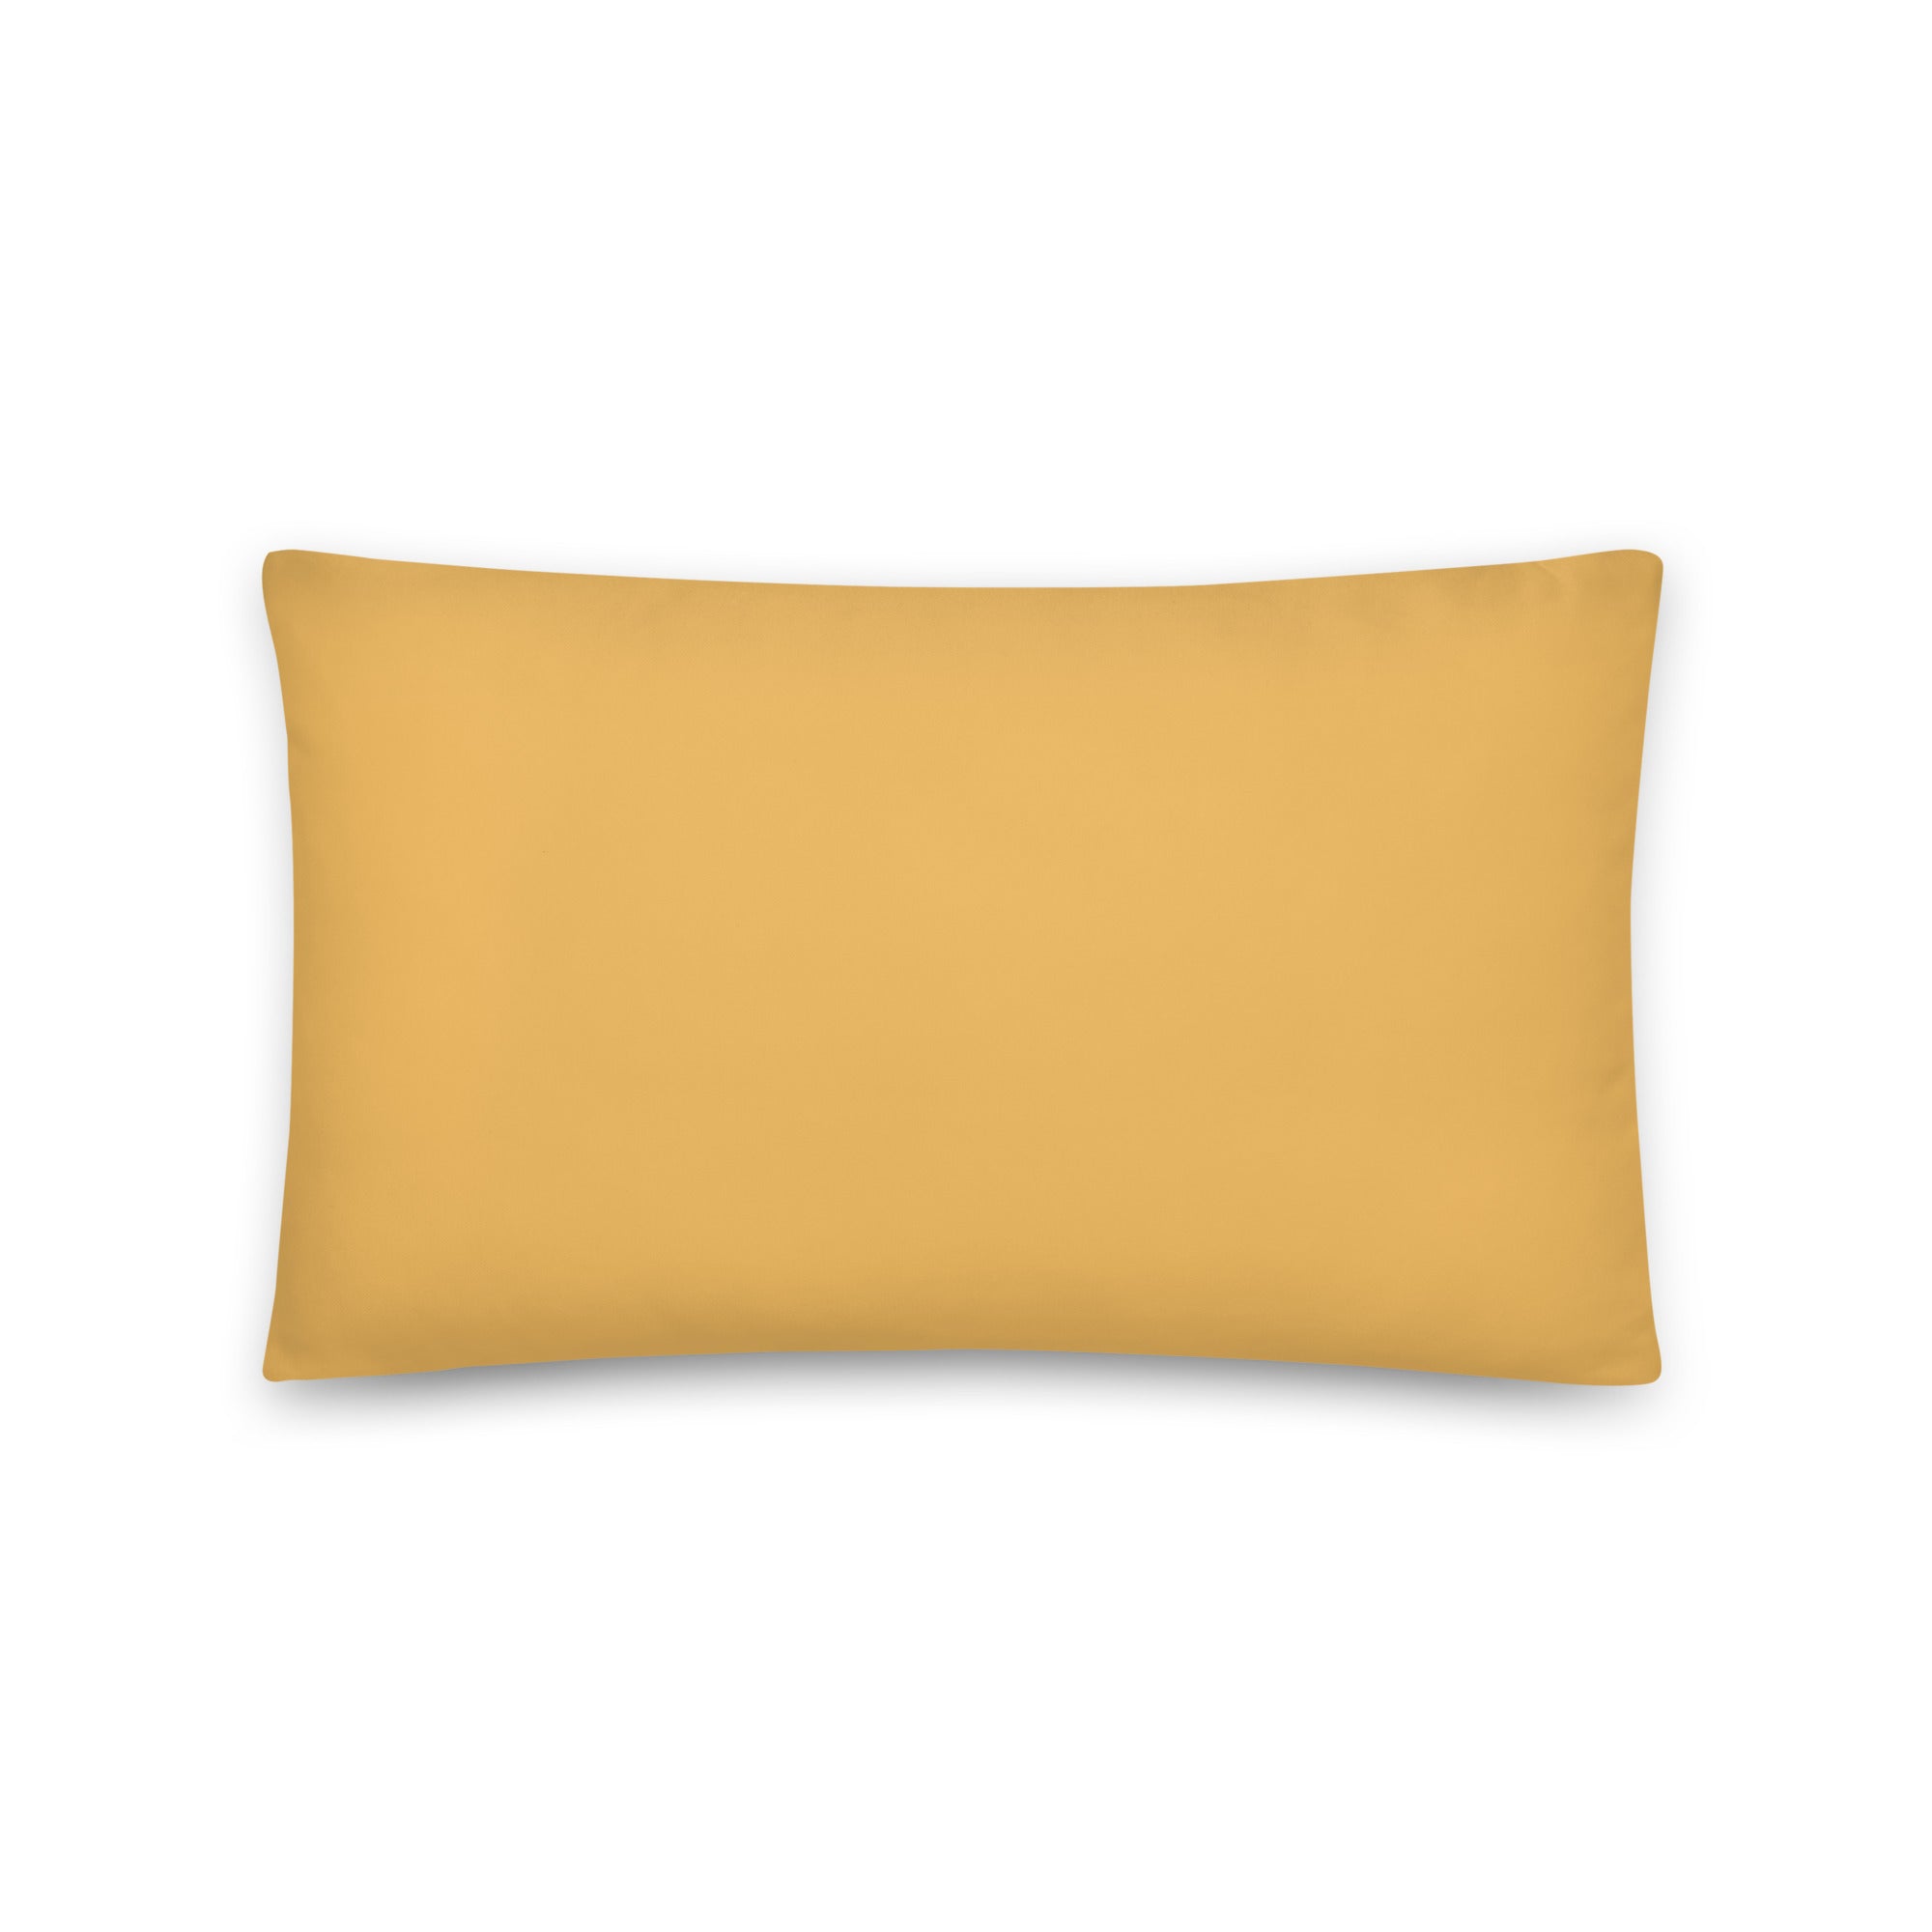 Sleeping Ginger Cat Pillow - Art Love Decor